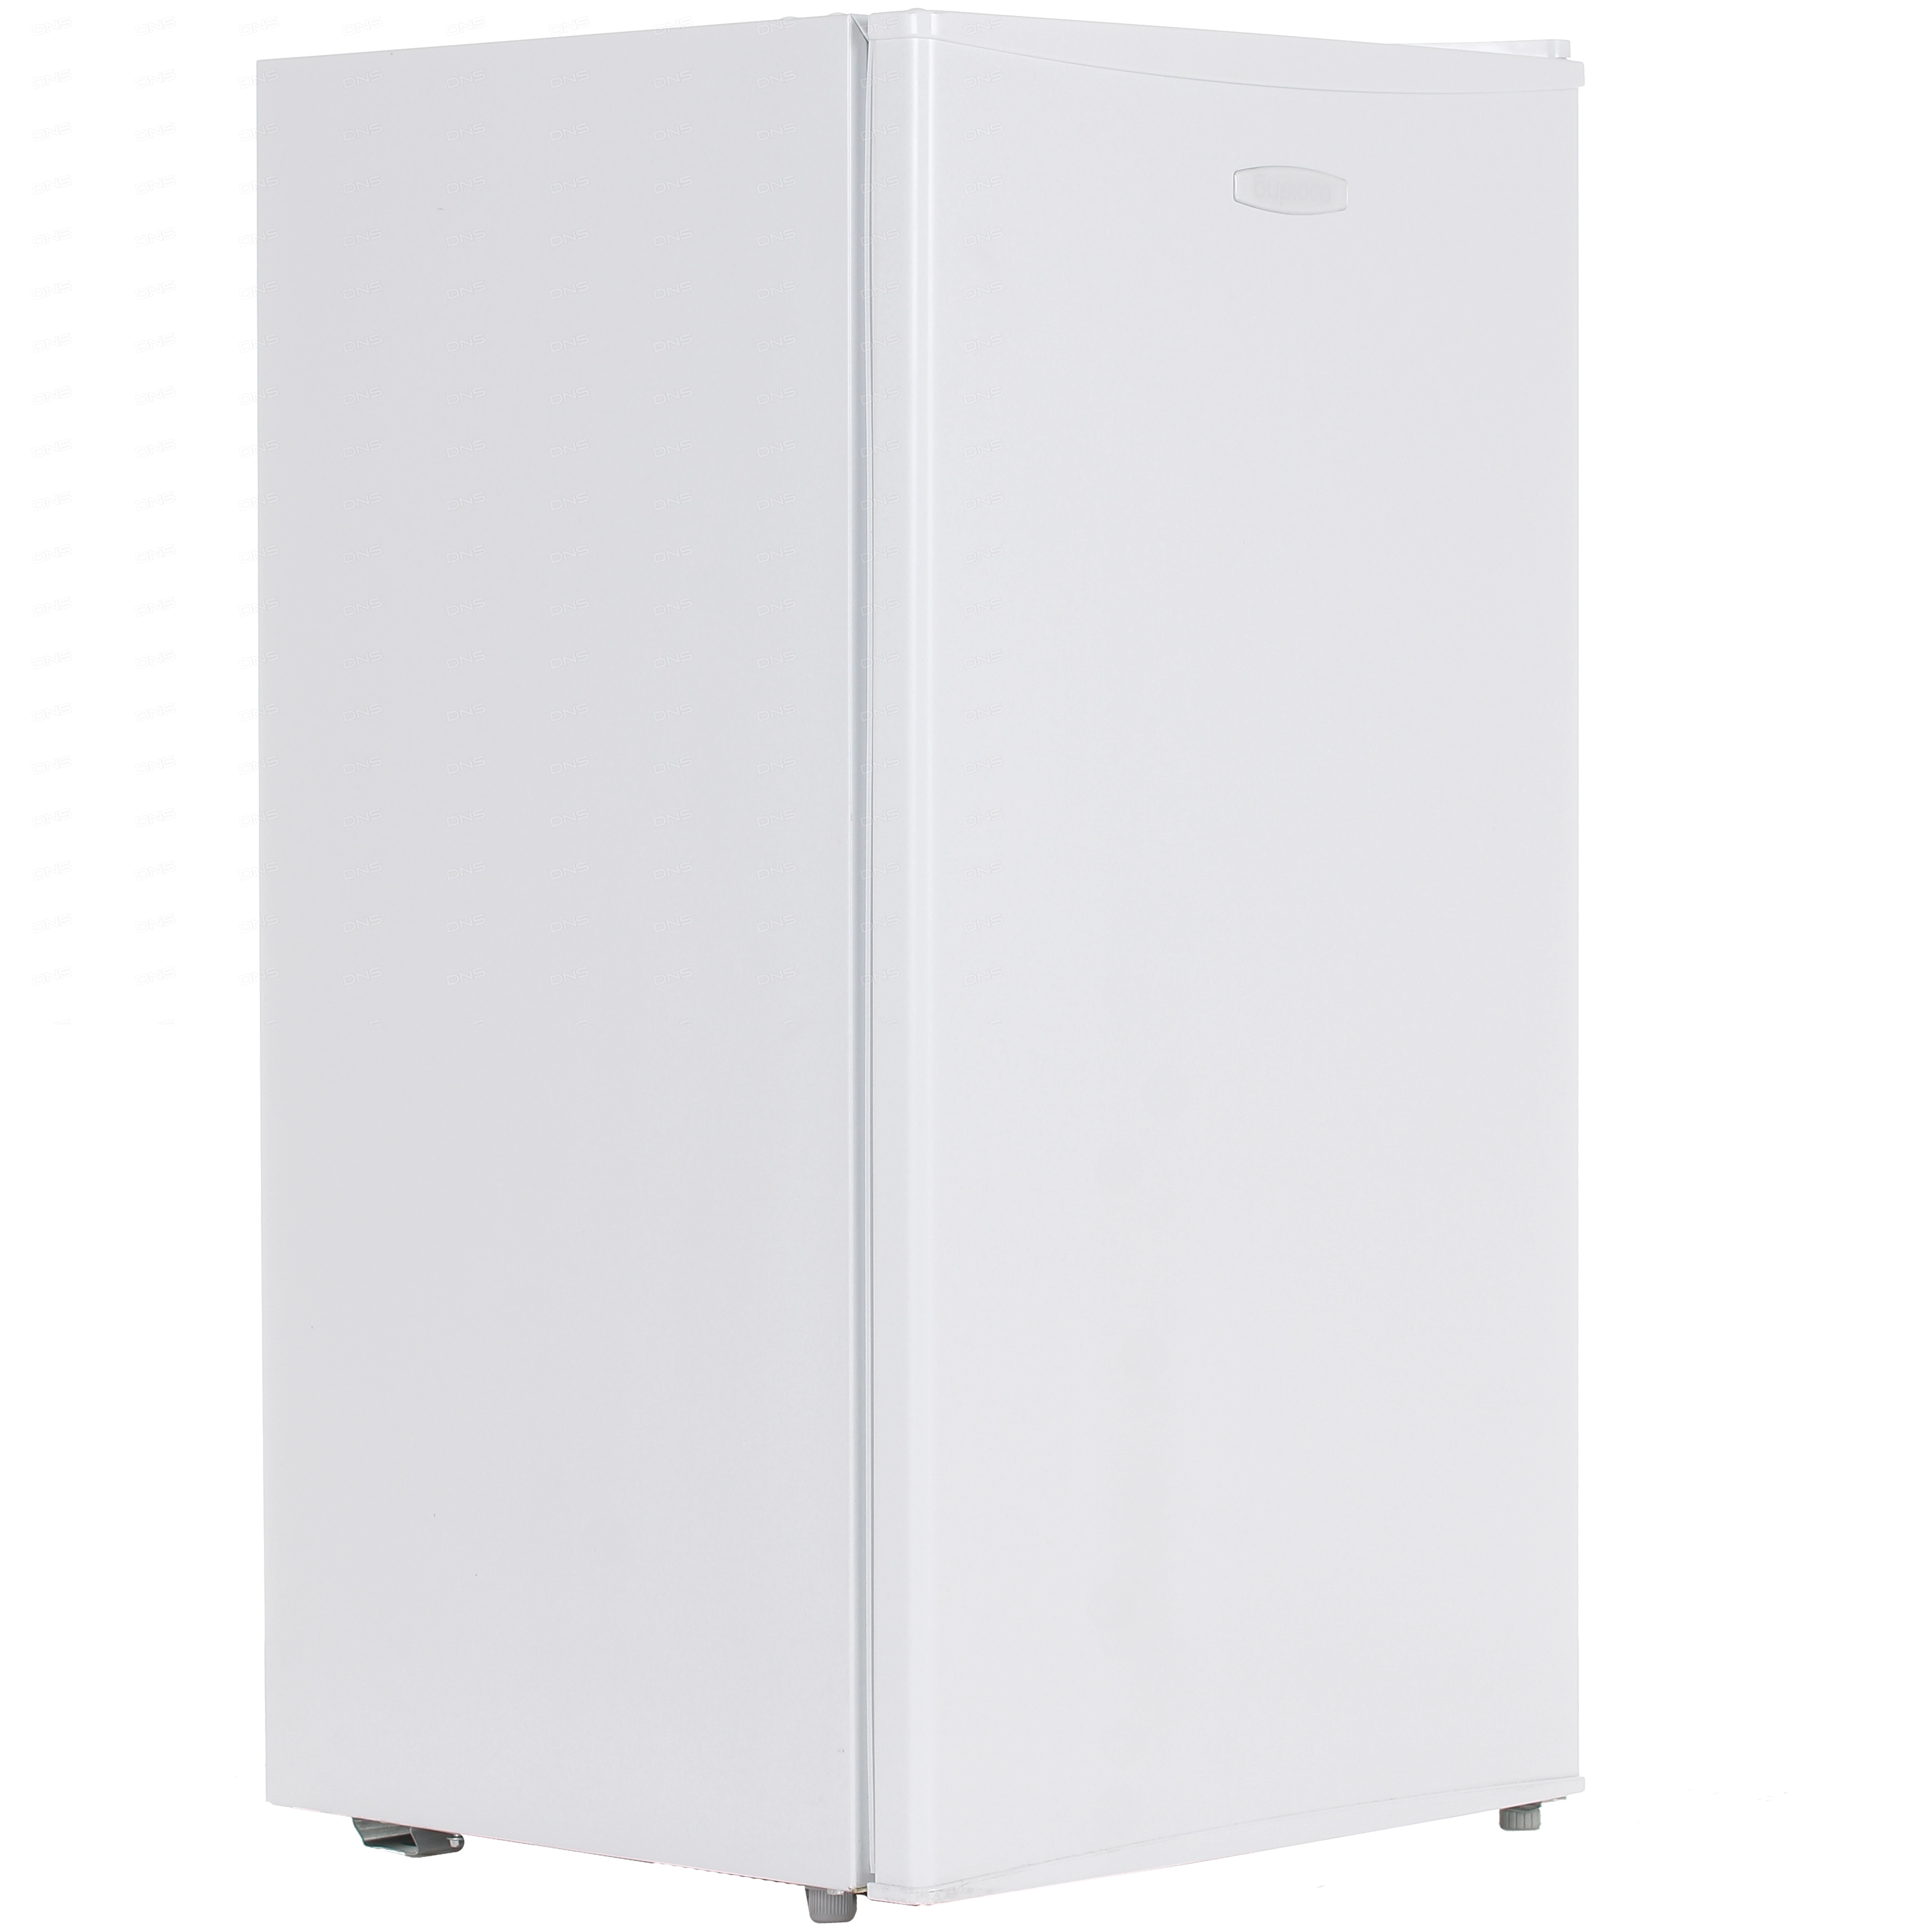 Холодильник компактный Бирюса 90 белый [93 л, внешнее покрытие-металл, пластик, размораживание - ручное, 47.2 см х 85 см х 45 см]